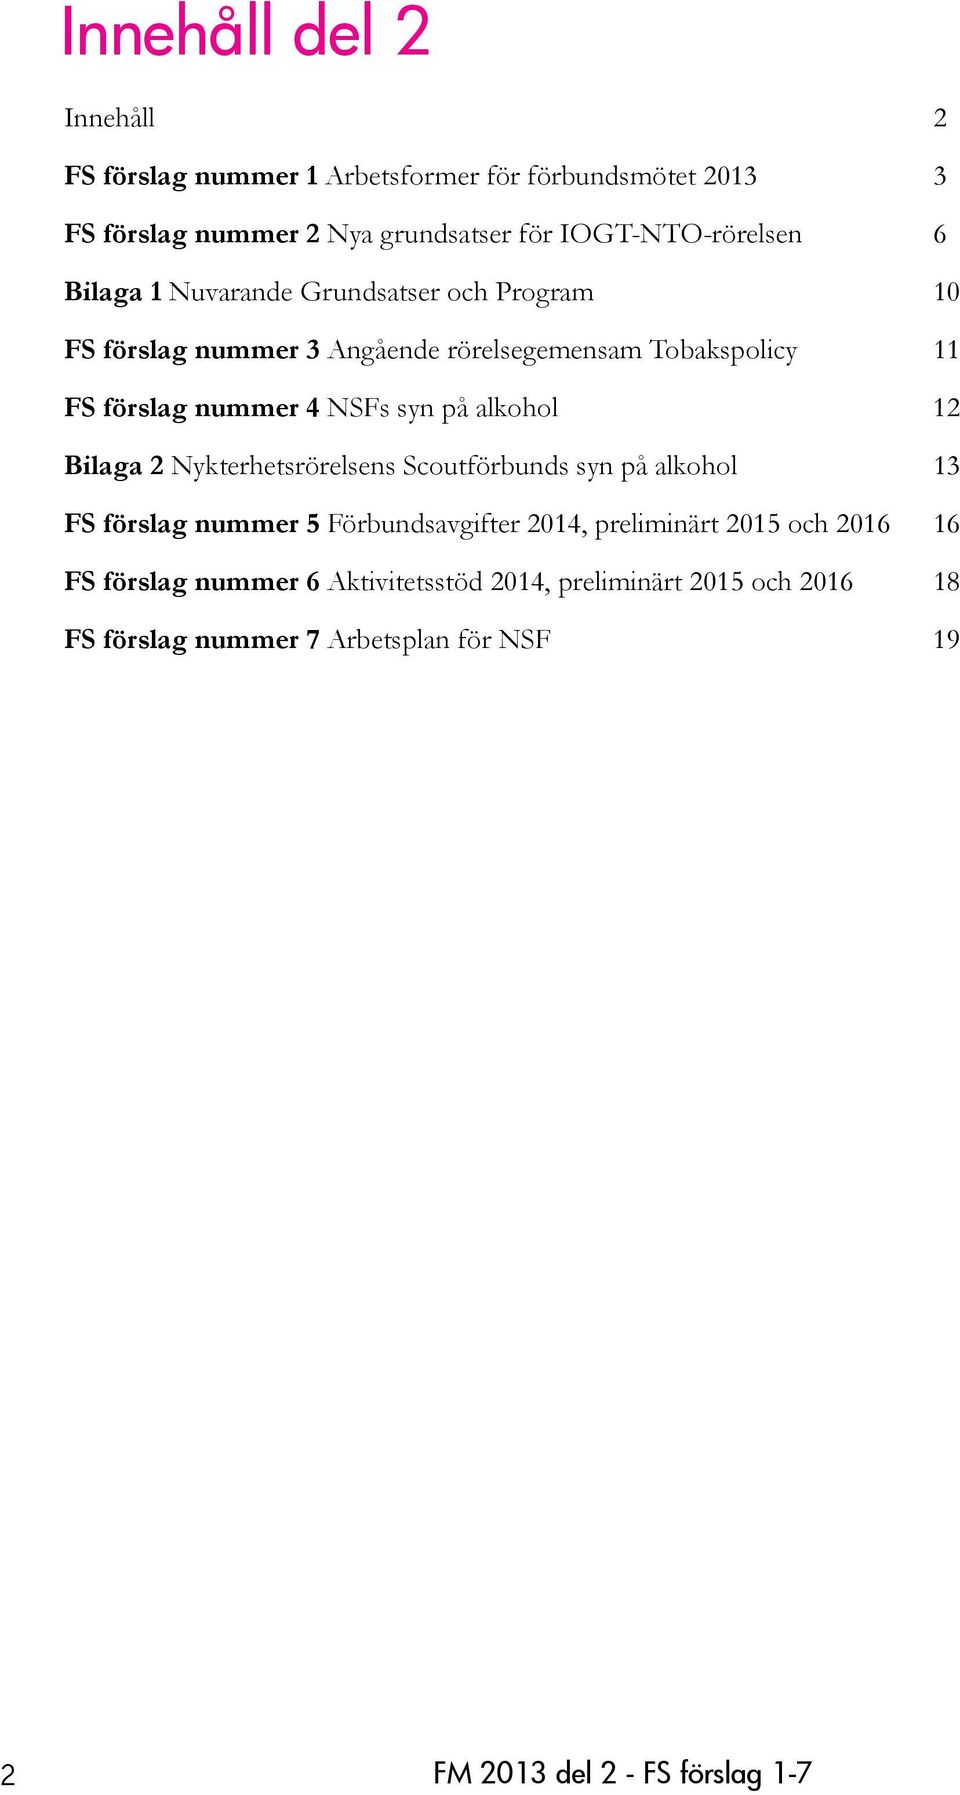 alkohol 12 Bilaga 2 Nykterhetsrörelsens Scoutförbunds syn på alkohol 13 FS förslag nummer 5 Förbundsavgifter 2014, preliminärt 2015 och 2016